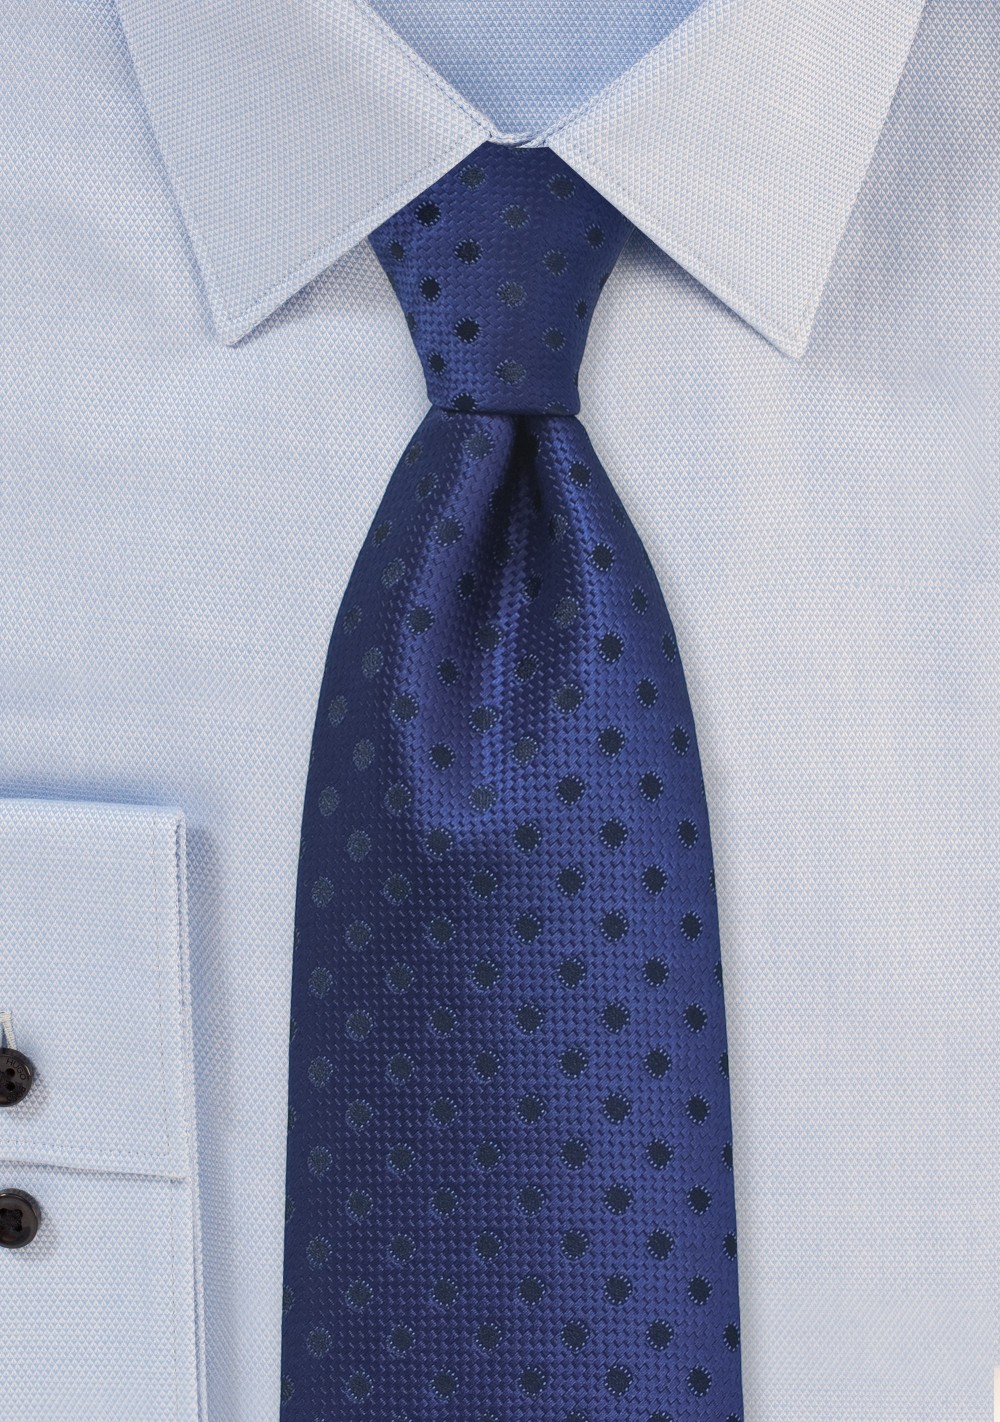 Dark Blue Necktie with Navy Polka Dots